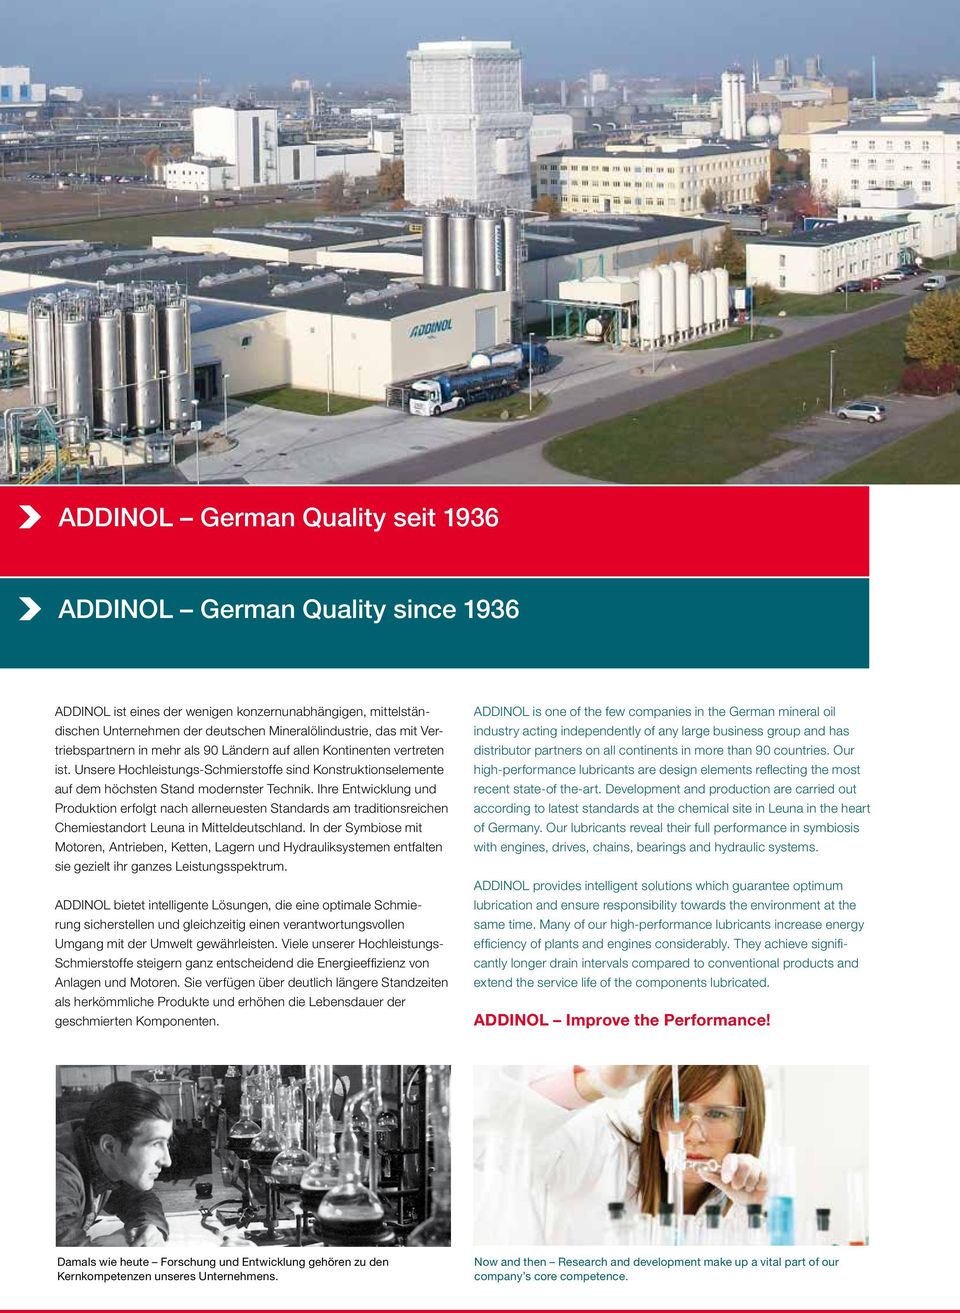 Ihre Entwicklung und Produktion erfolgt nach allerneuesten Standards am traditionsreichen Chemiestandort Leuna in Mitteldeutschland.